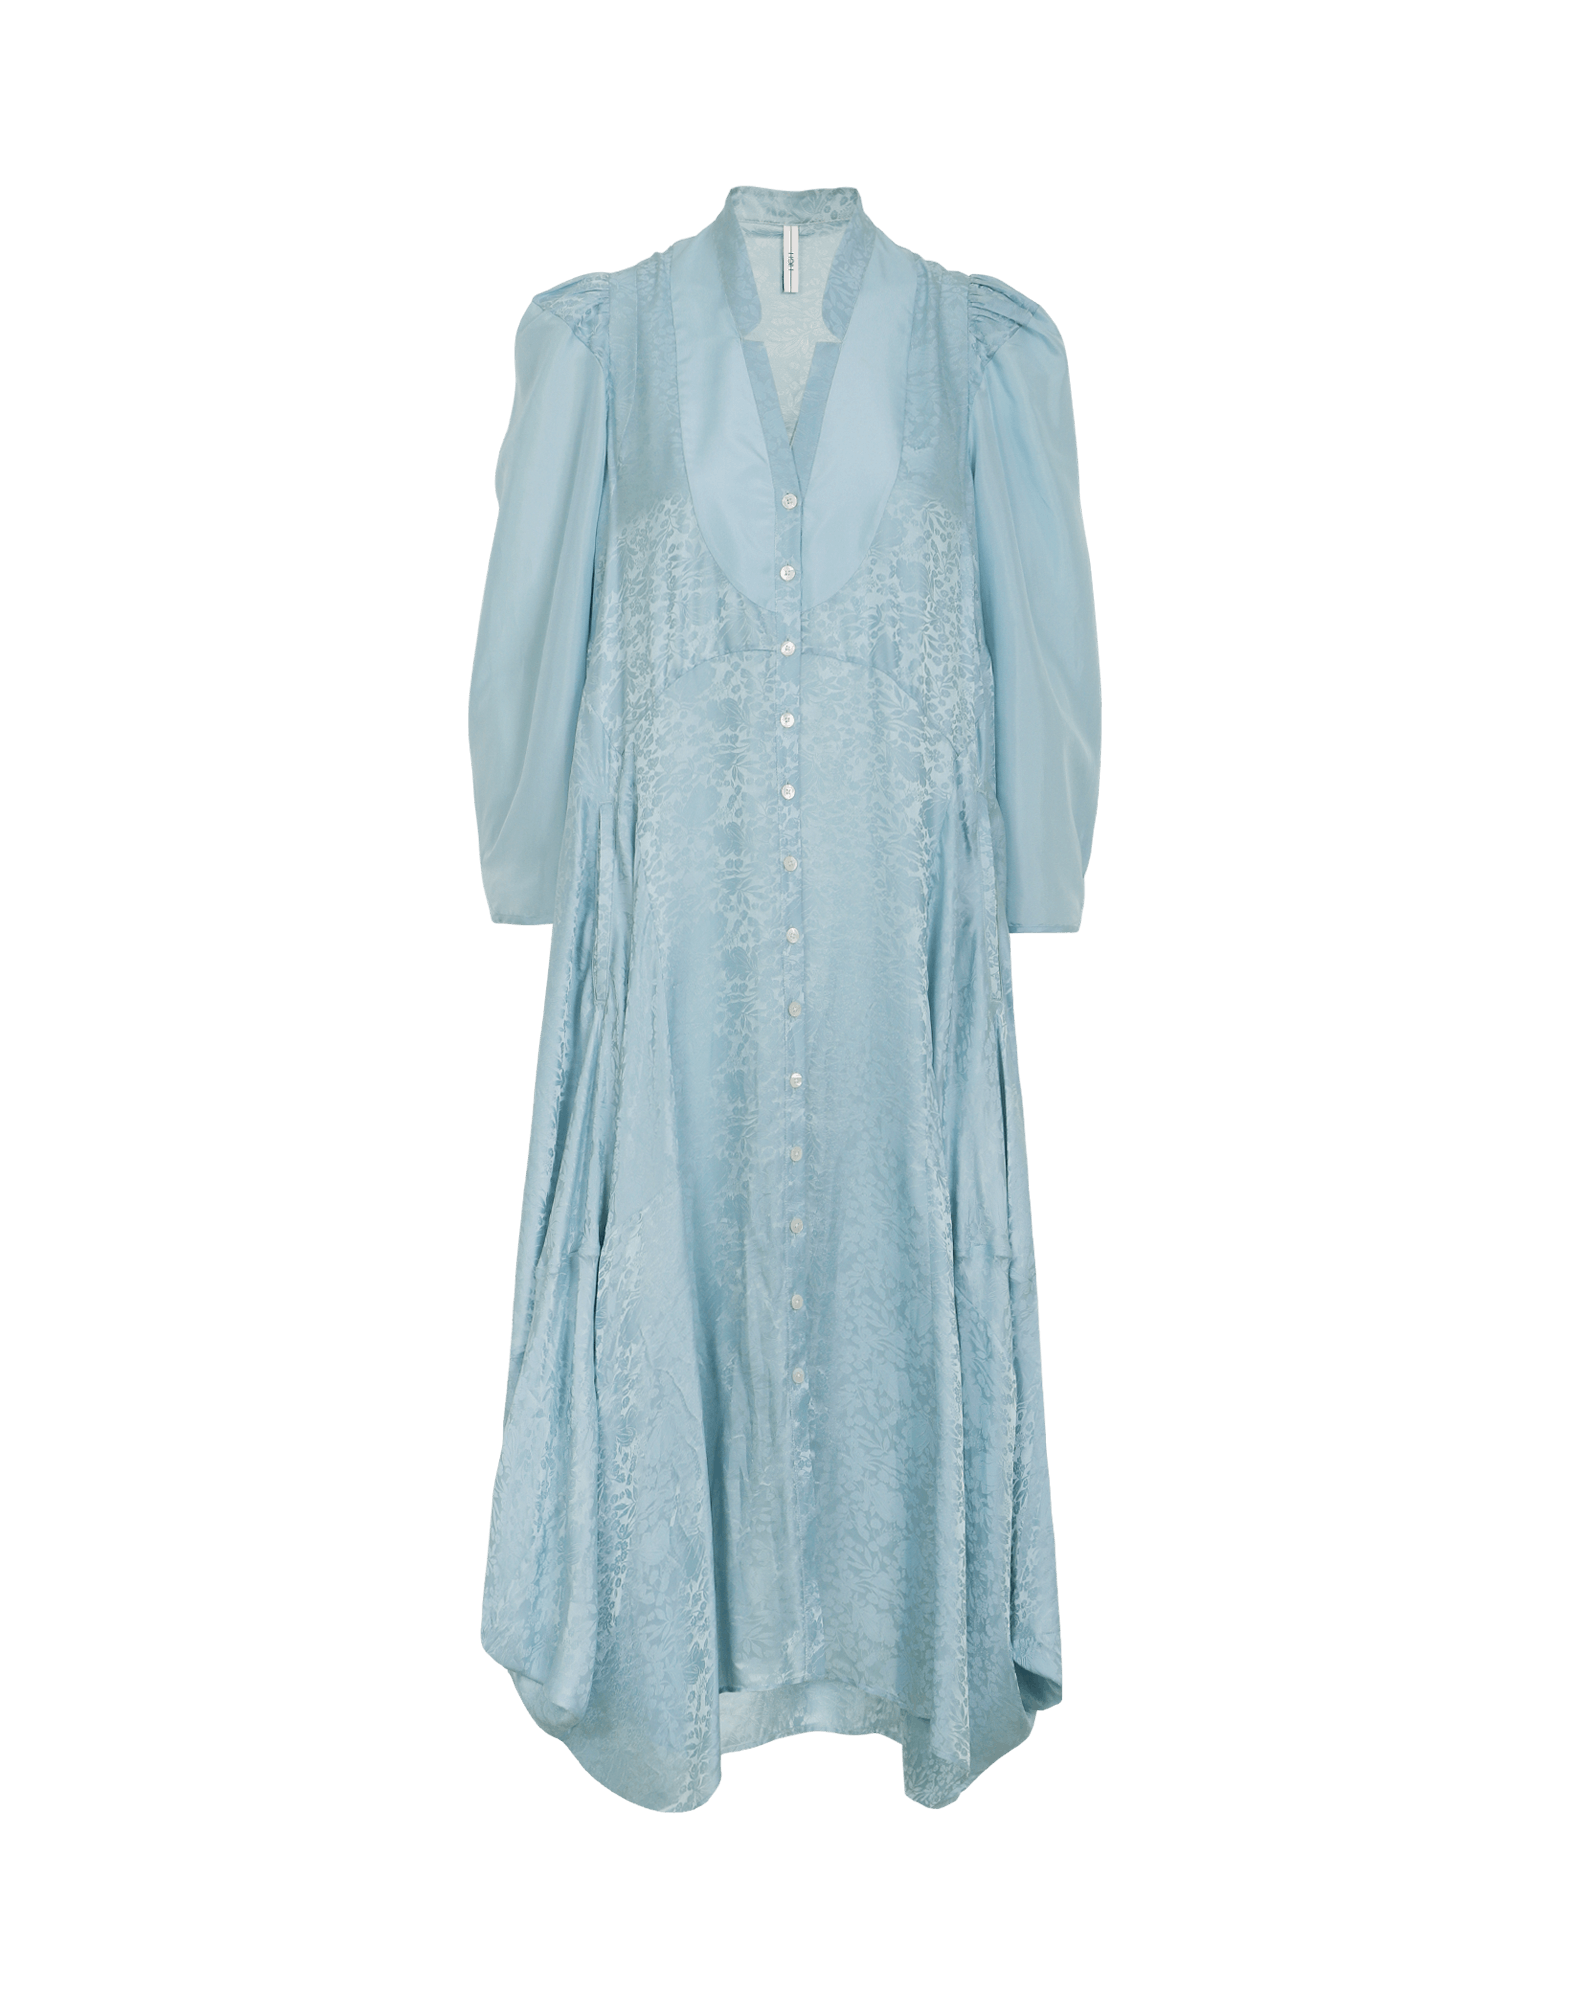 blue shirtwaist dress